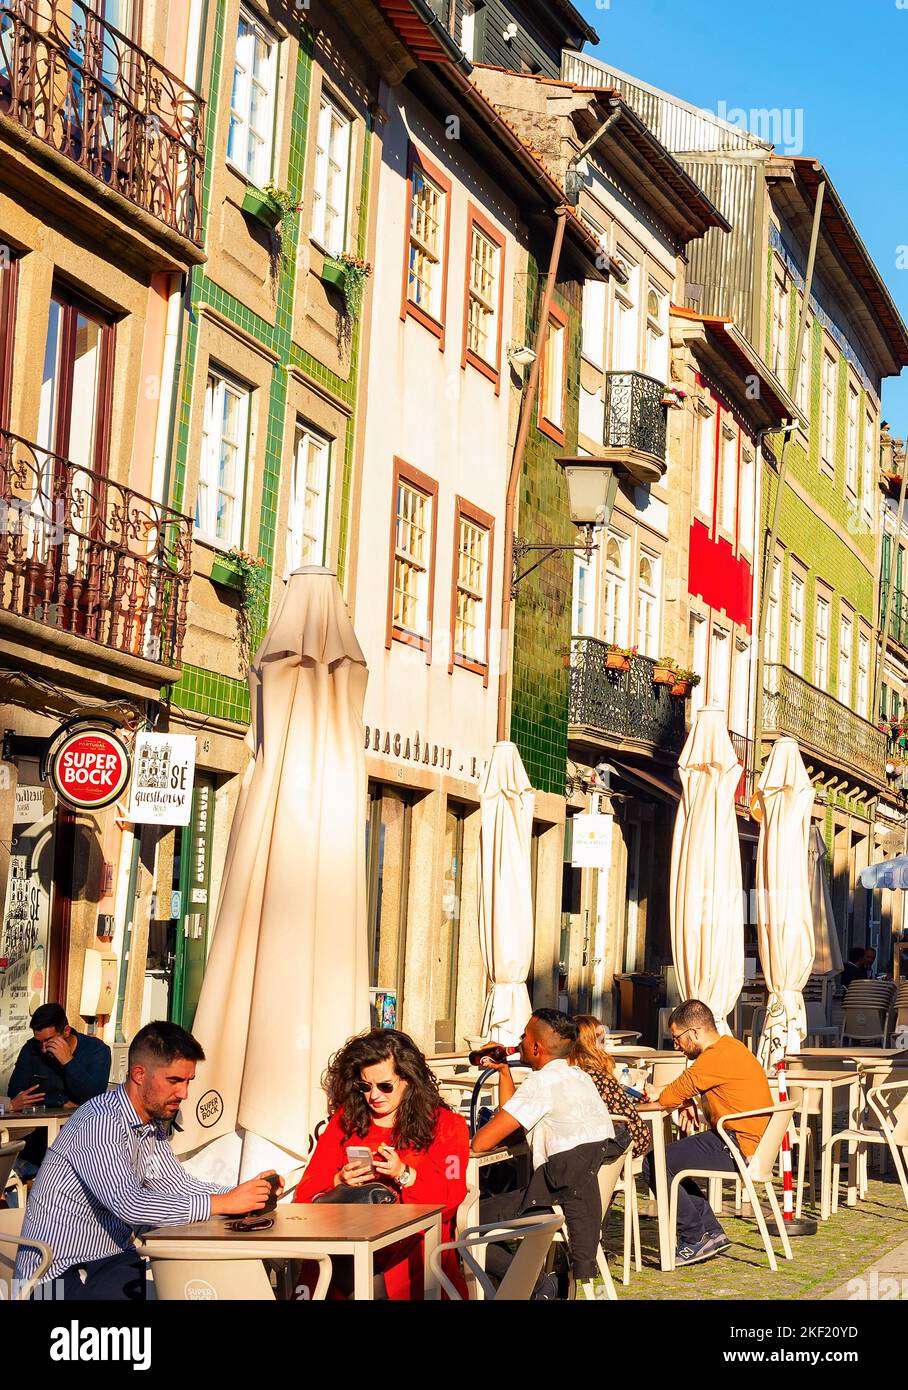 BRAGA, PORTO, PORTUGAL - NOVEMBER 14, 2021: People sitting in street cafe, Santa Cruz church in background, evening sunshine Stock Photo